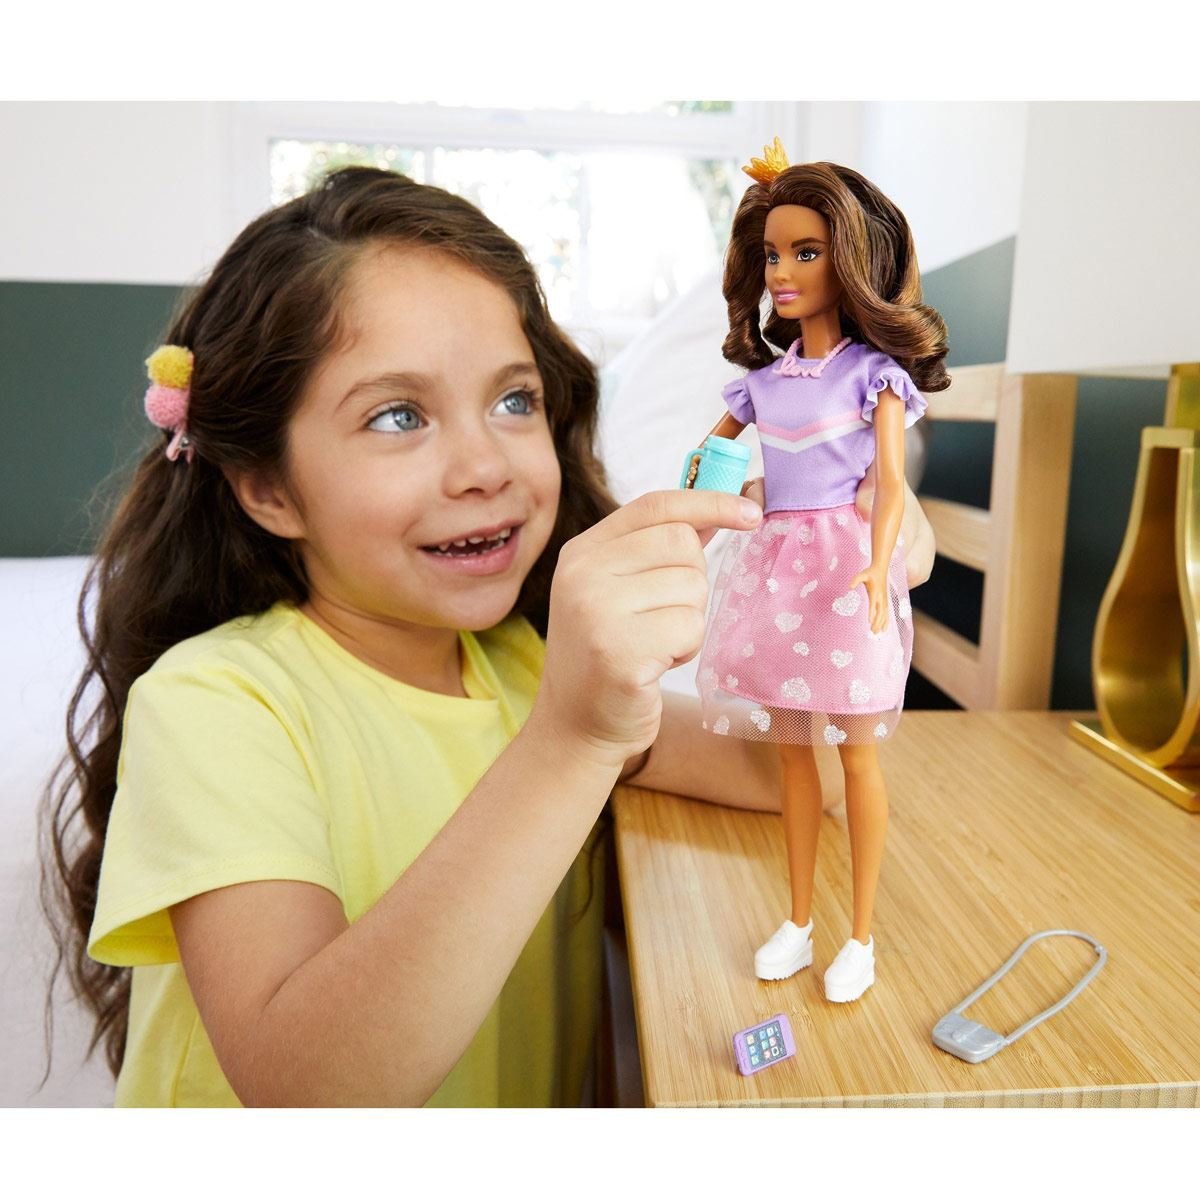 Barbie Dreamhouse Adventures Mu&#241;eca Teresa